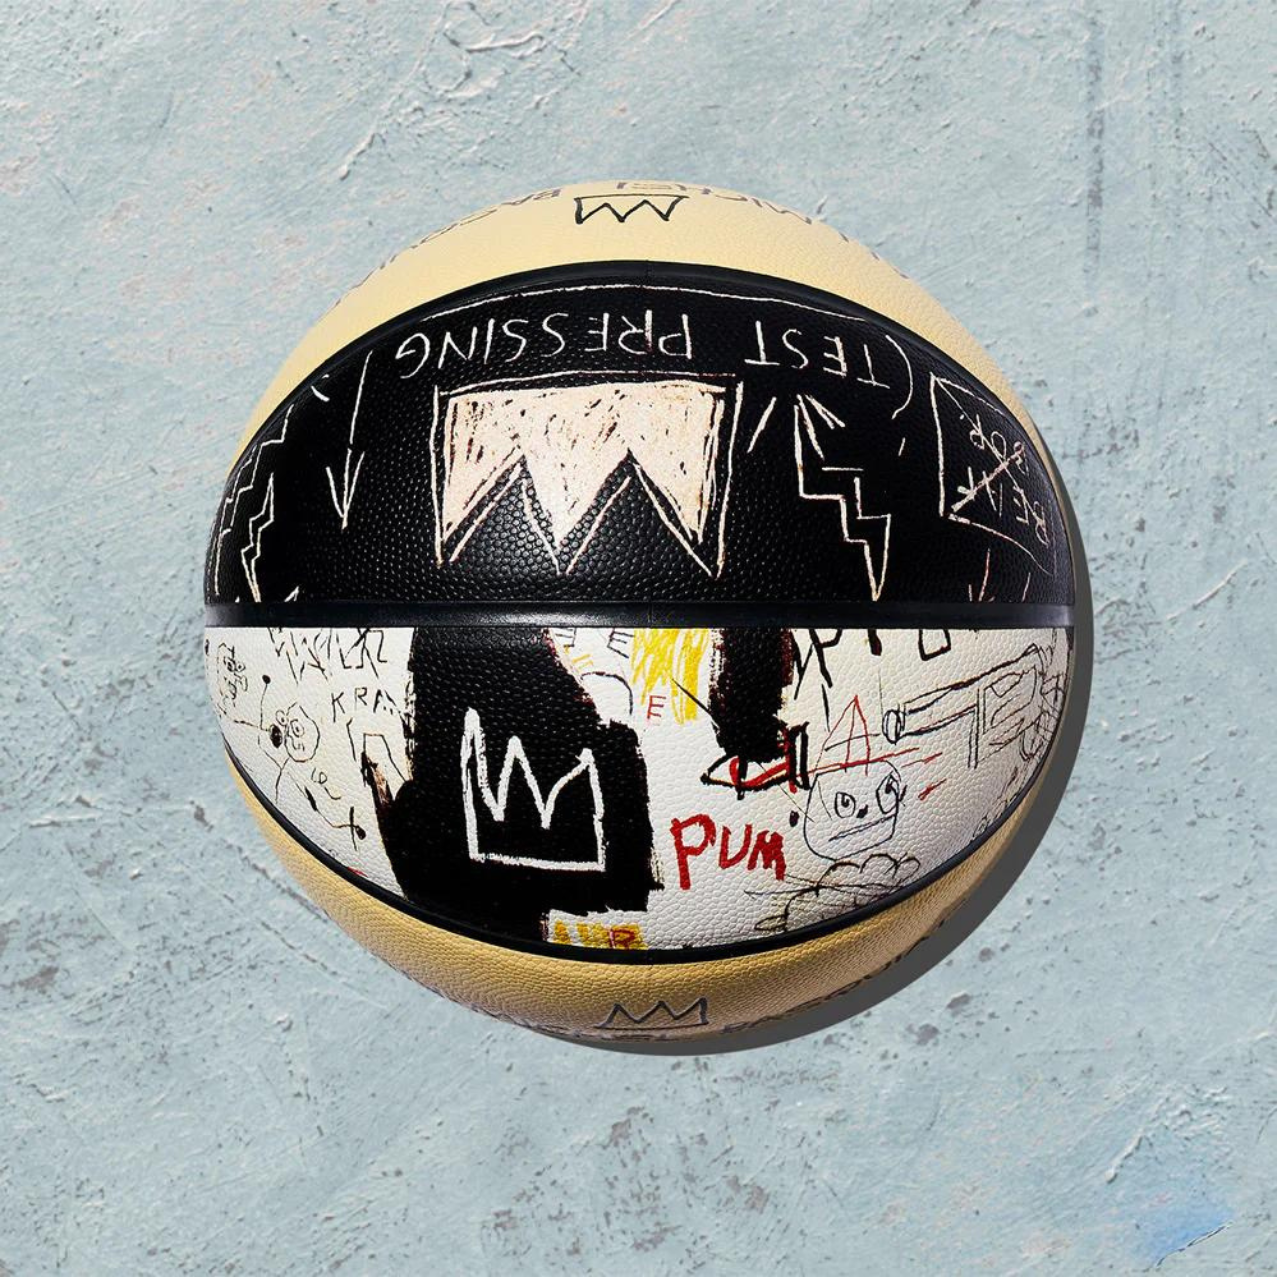 Nueva Colección de Balones Inspirados en Basquiat y Haring